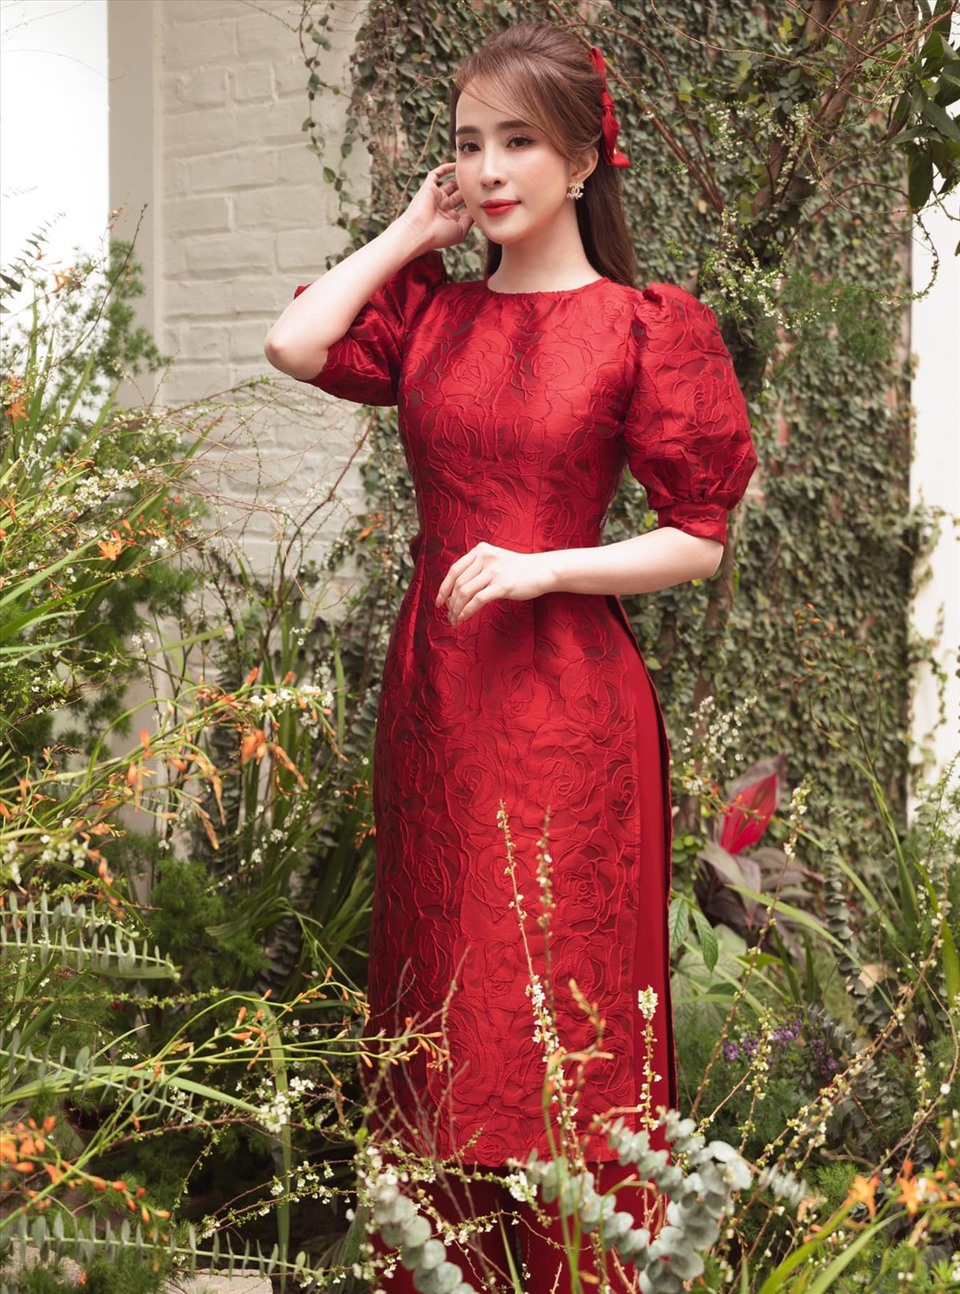 Nữ diễn viên Quỳnh Nga hút mọi ánh nhìn khi diện tà áo dài đỏ rực rỡ, như một lời chúc may mắn đến khán giả nhân dịp đầu năm Tân Sửu 2021. Ảnh: NSCC.